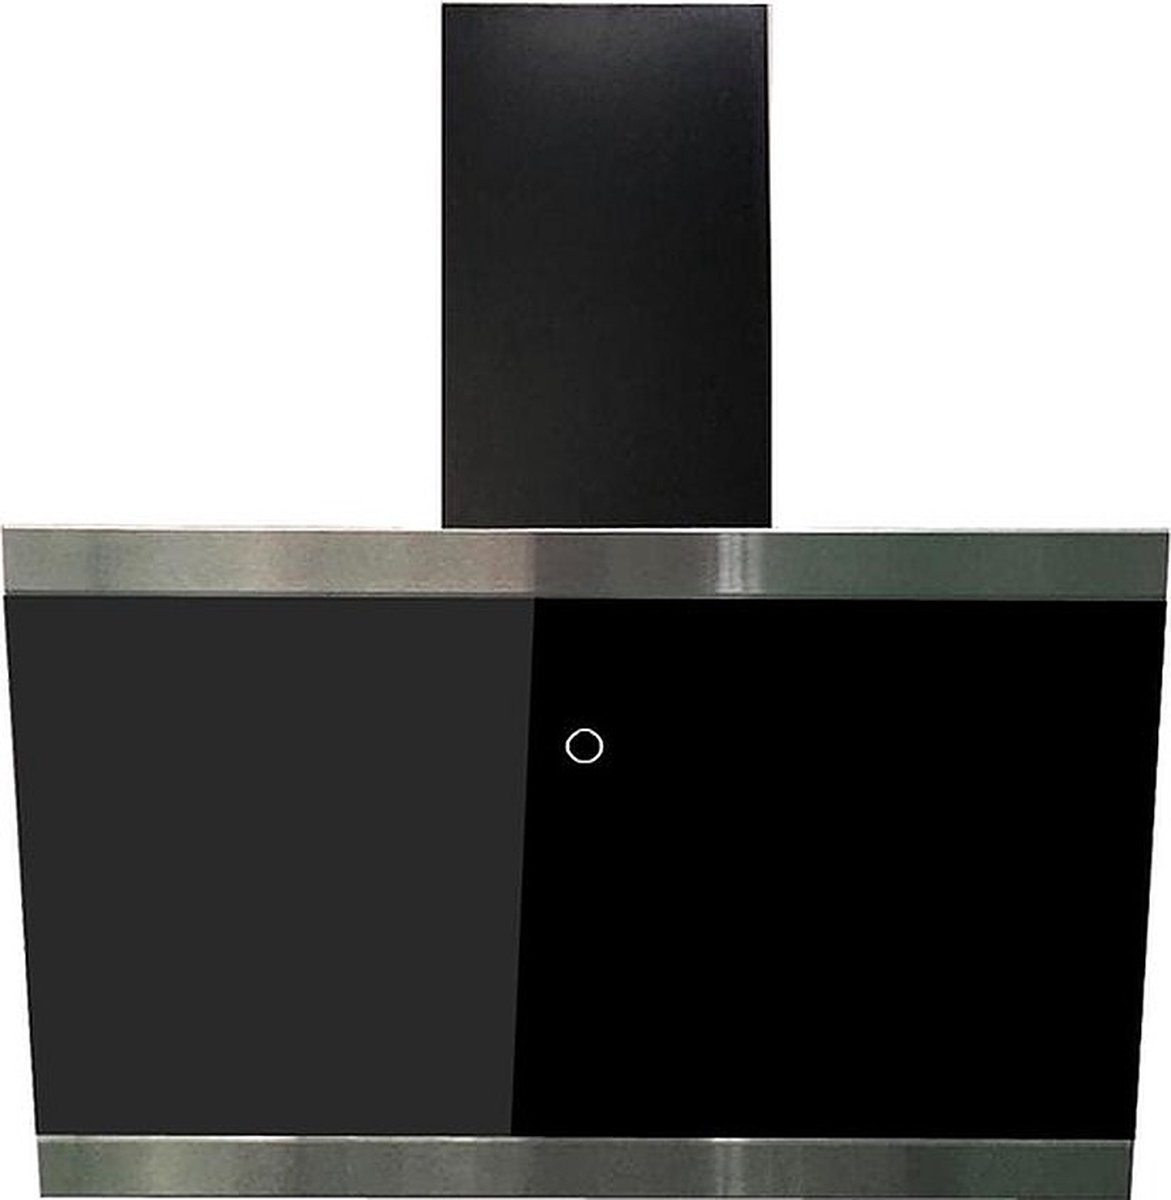 Schuine afzuigkap 60 cm - A++ label - zwart - 479,8 m3/h - Touchscreen - Glas - CH89060S